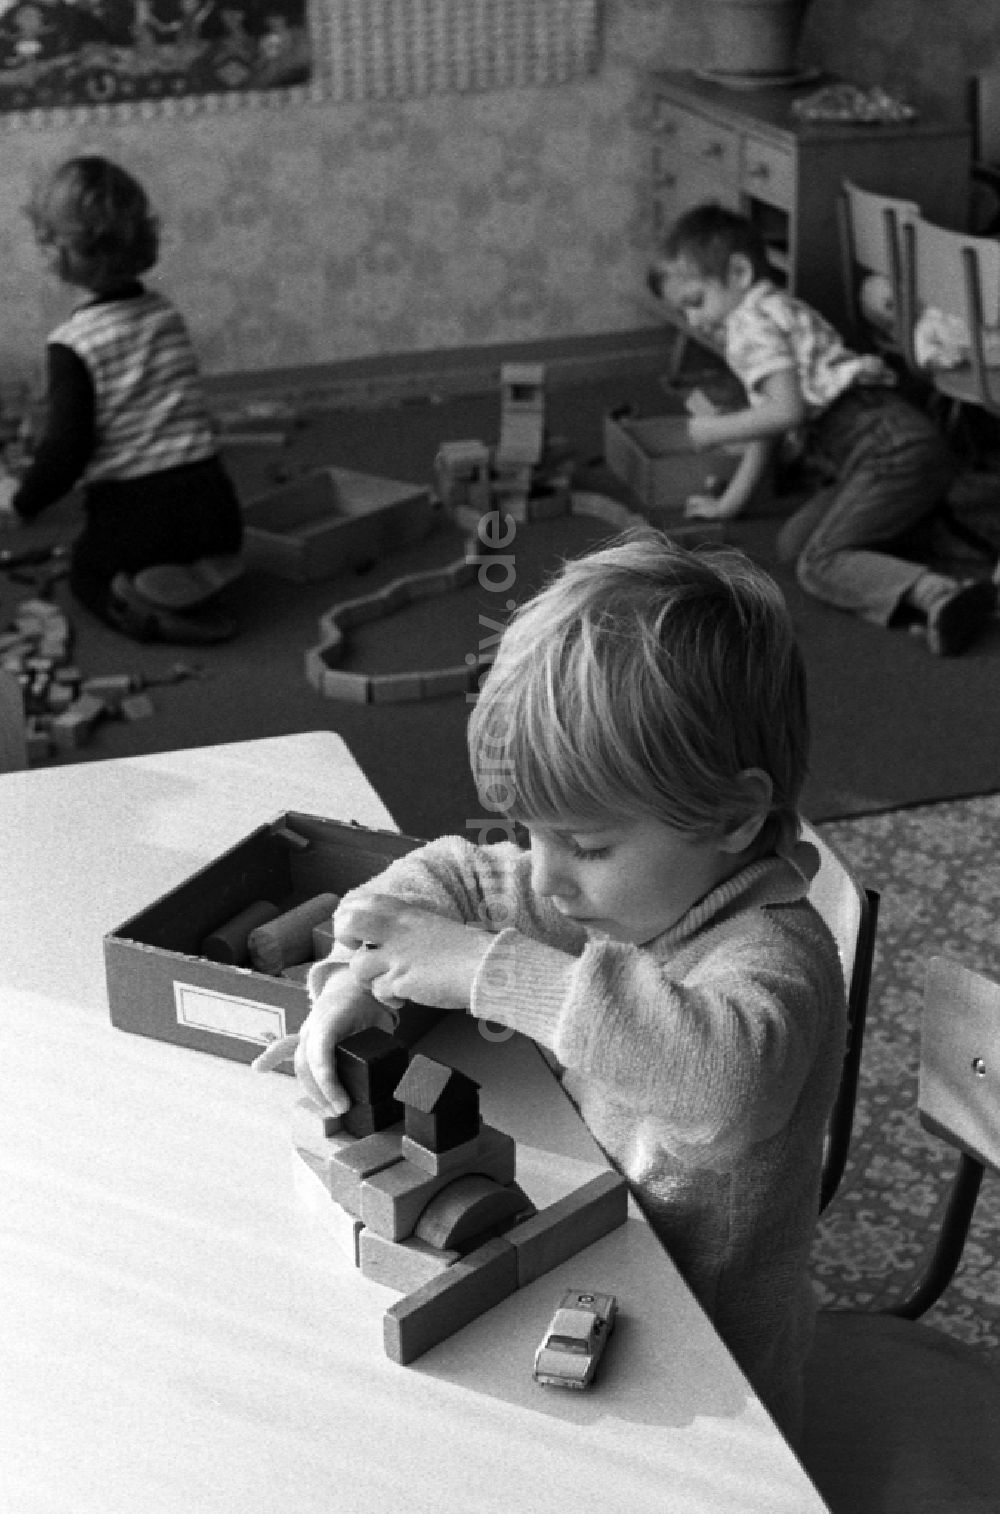 DDR-Bildarchiv: Berlin - Betreuung einer Kindergartengruppe beim Spiel mit Holzbausteinen in Berlin, der ehemaligen Hauptstadt der DDR, Deutsche Demokratische Republik